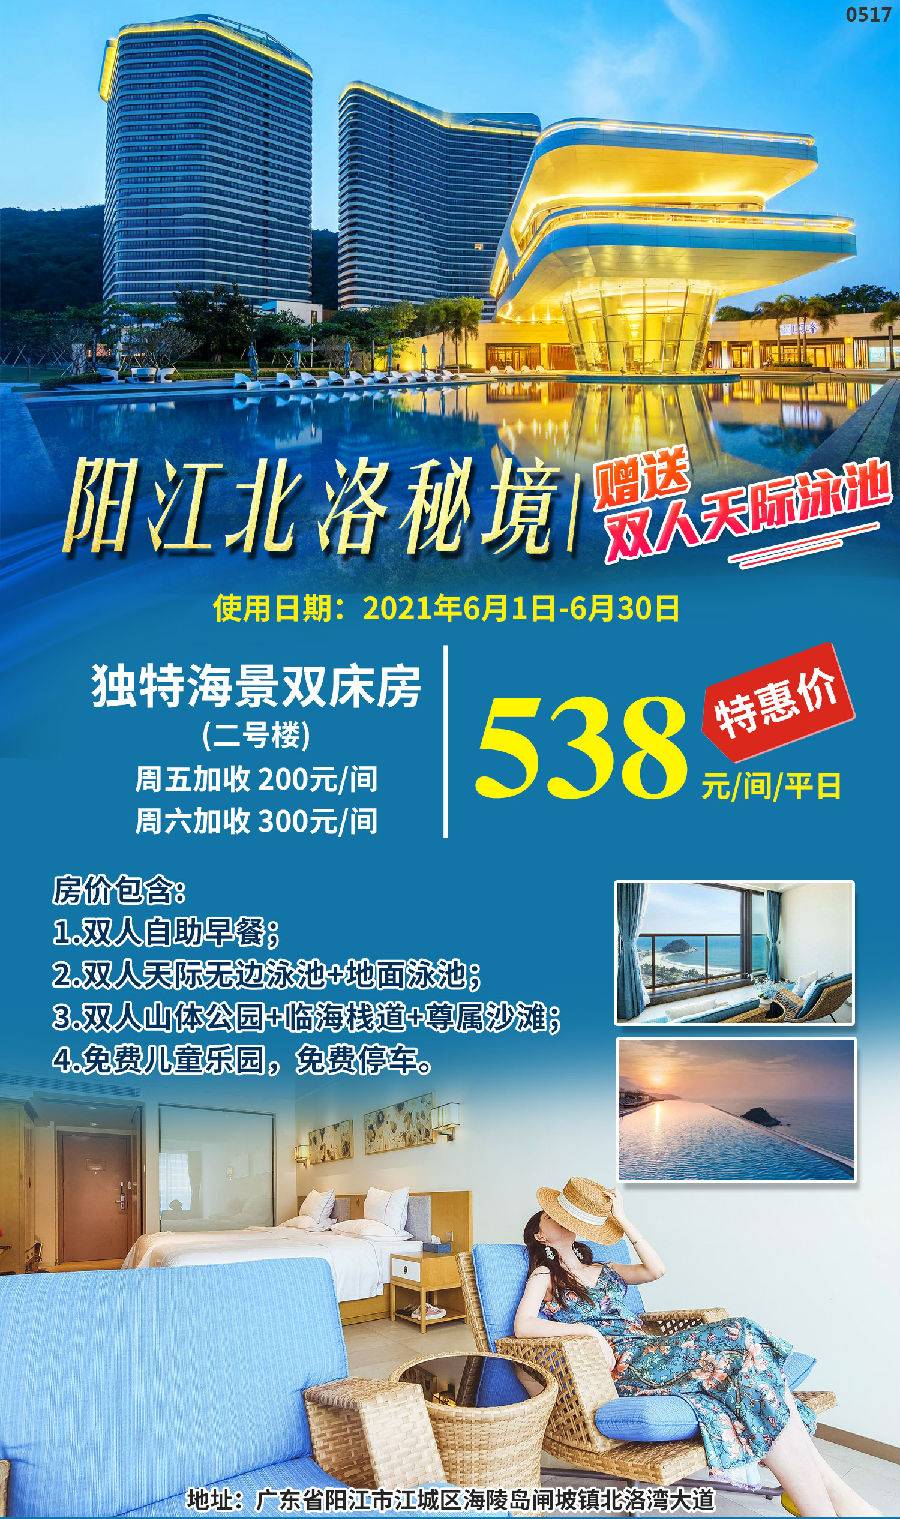 阳江北洛秘境6月特惠 538元=独特海景双1间+双人自助早餐、天际泳池、“山体公园”门票